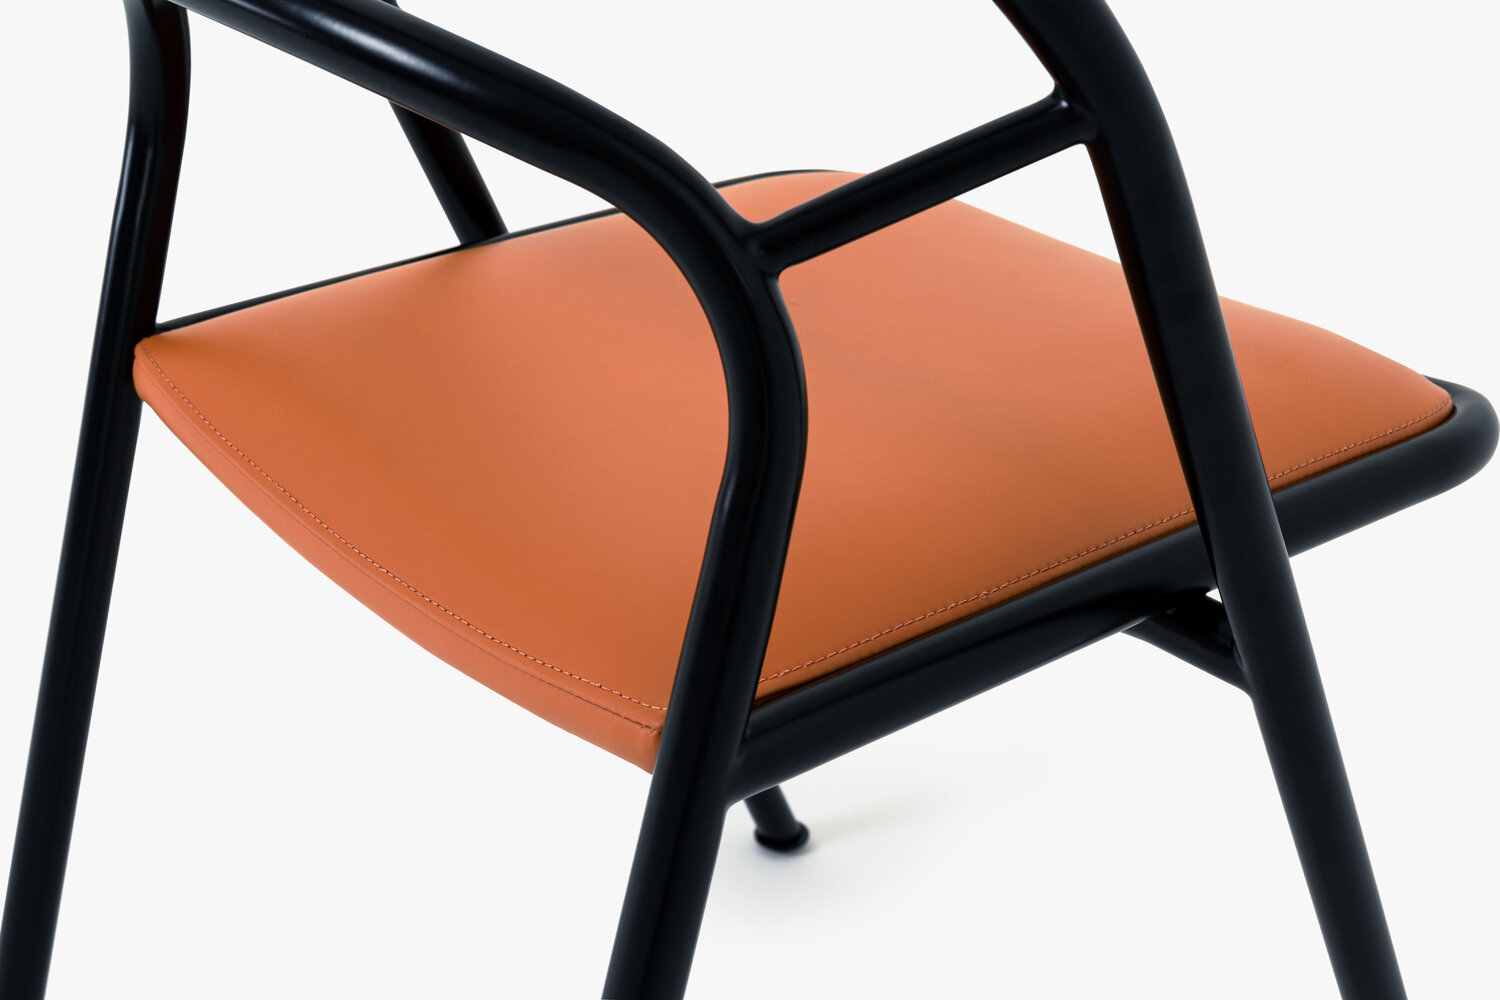 Inn_leather_upholstery_chair_detail.jpg